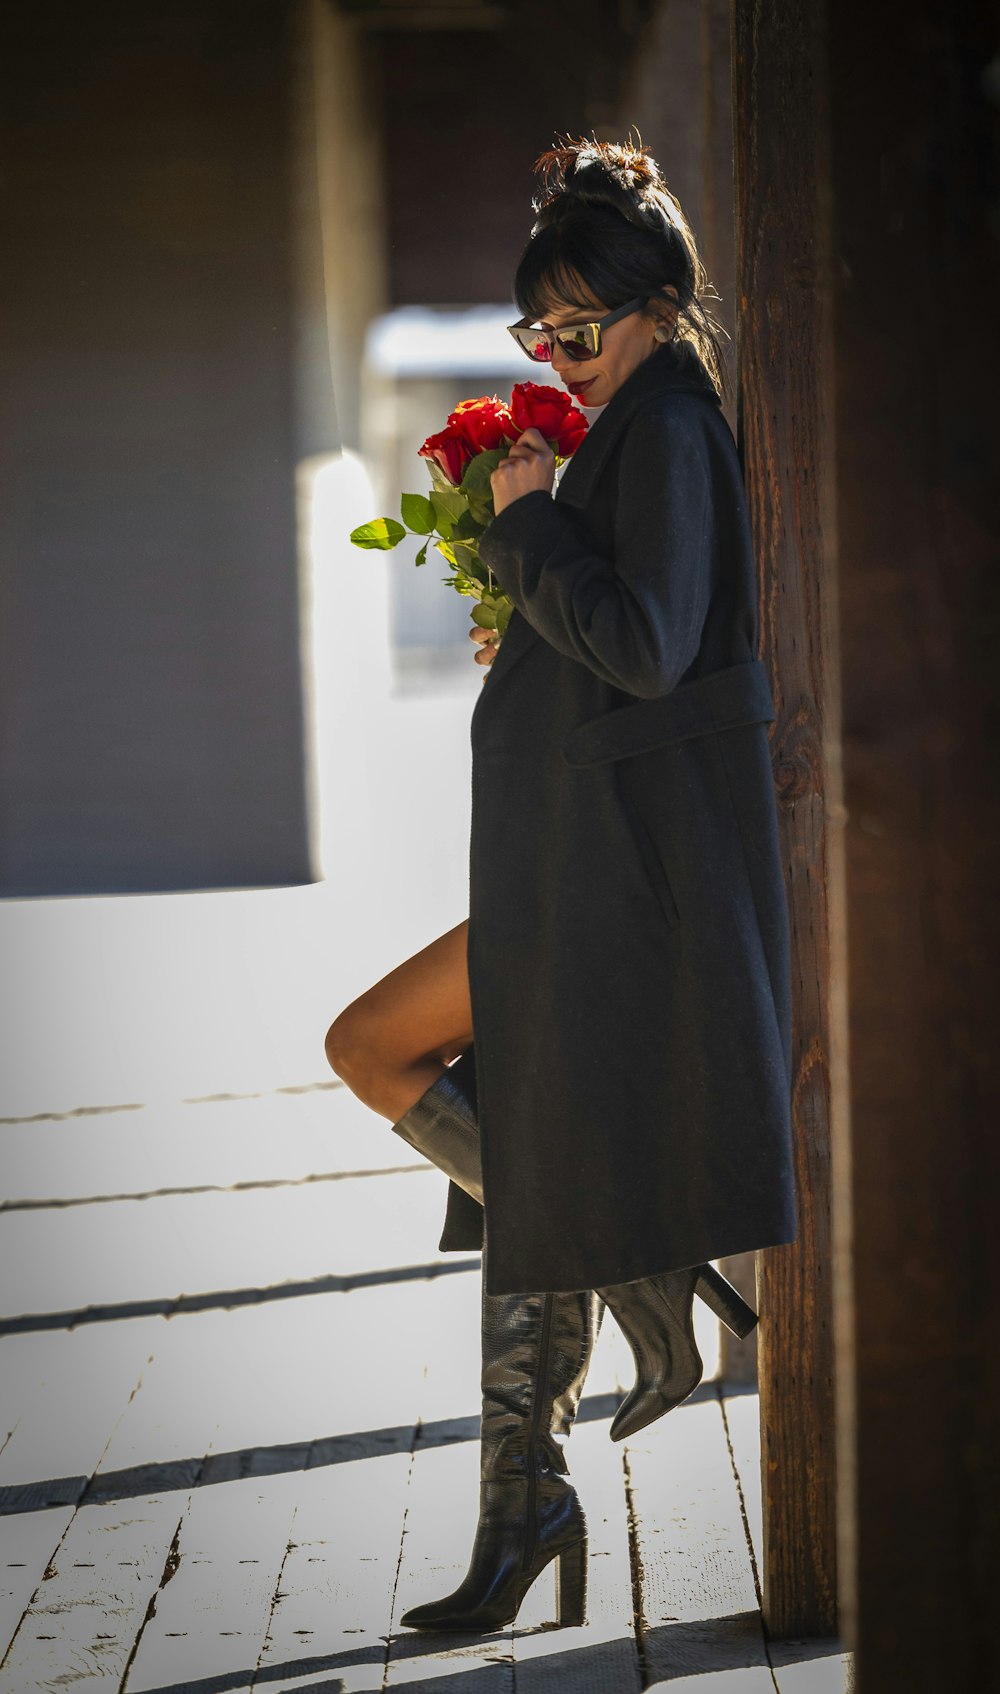 Una mujer con un abrigo negro sostiene flores